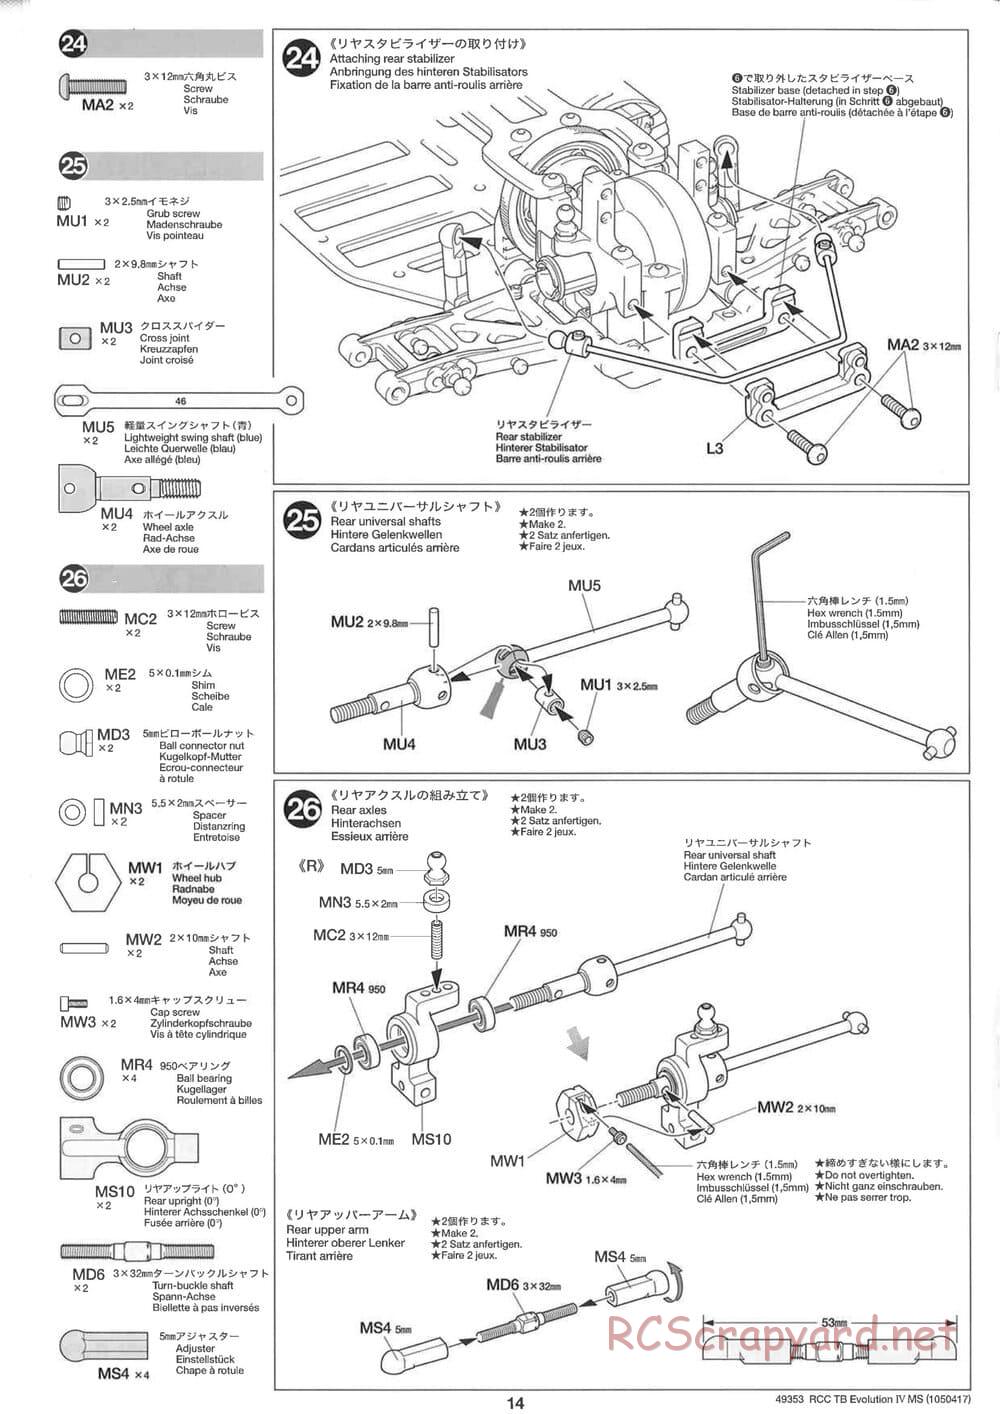 Tamiya - TB Evolution IV MS Chassis - Manual - Page 14